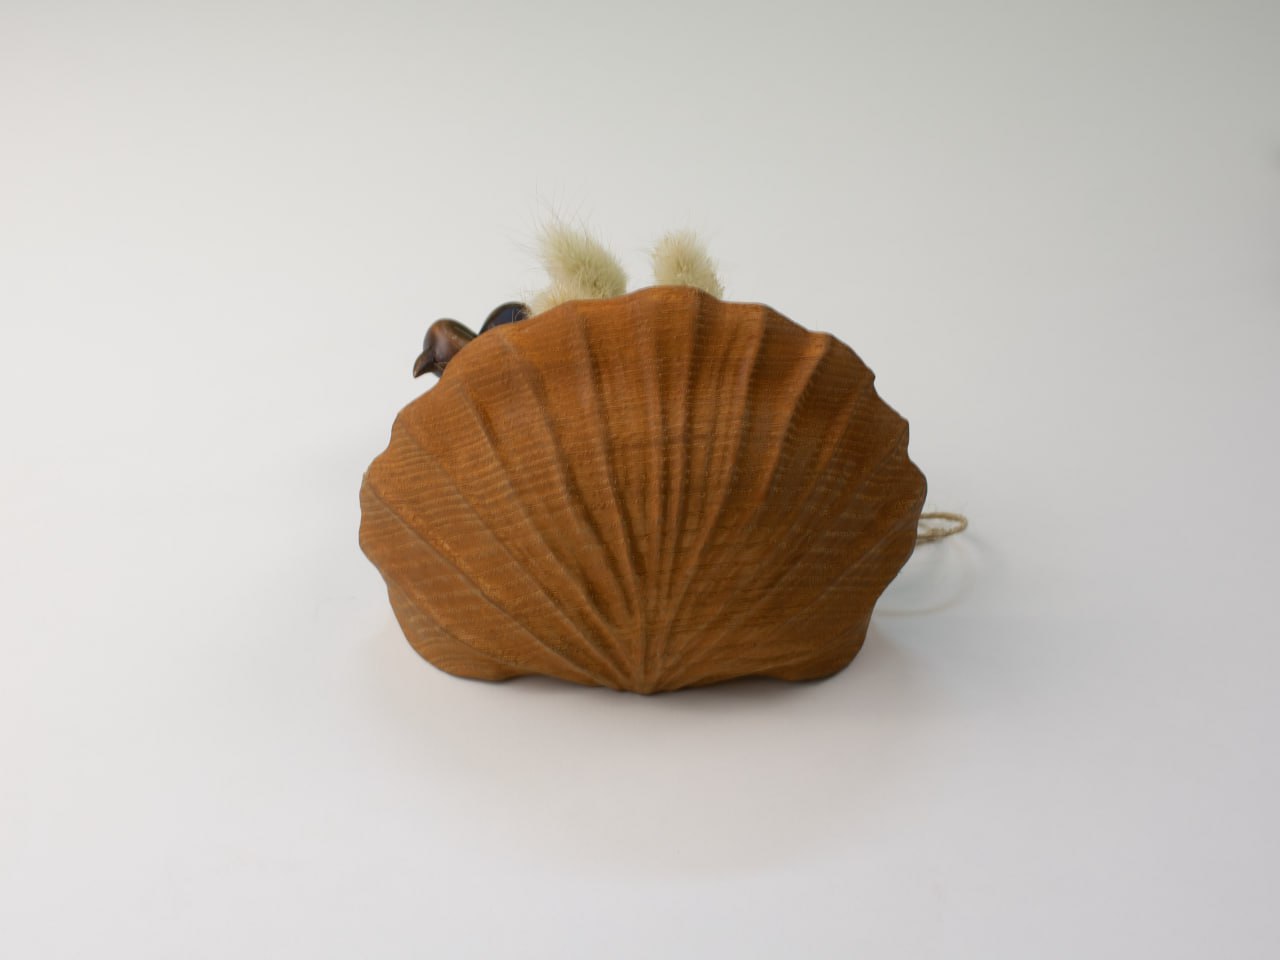 Seashell-Inspired Wooden Shelf